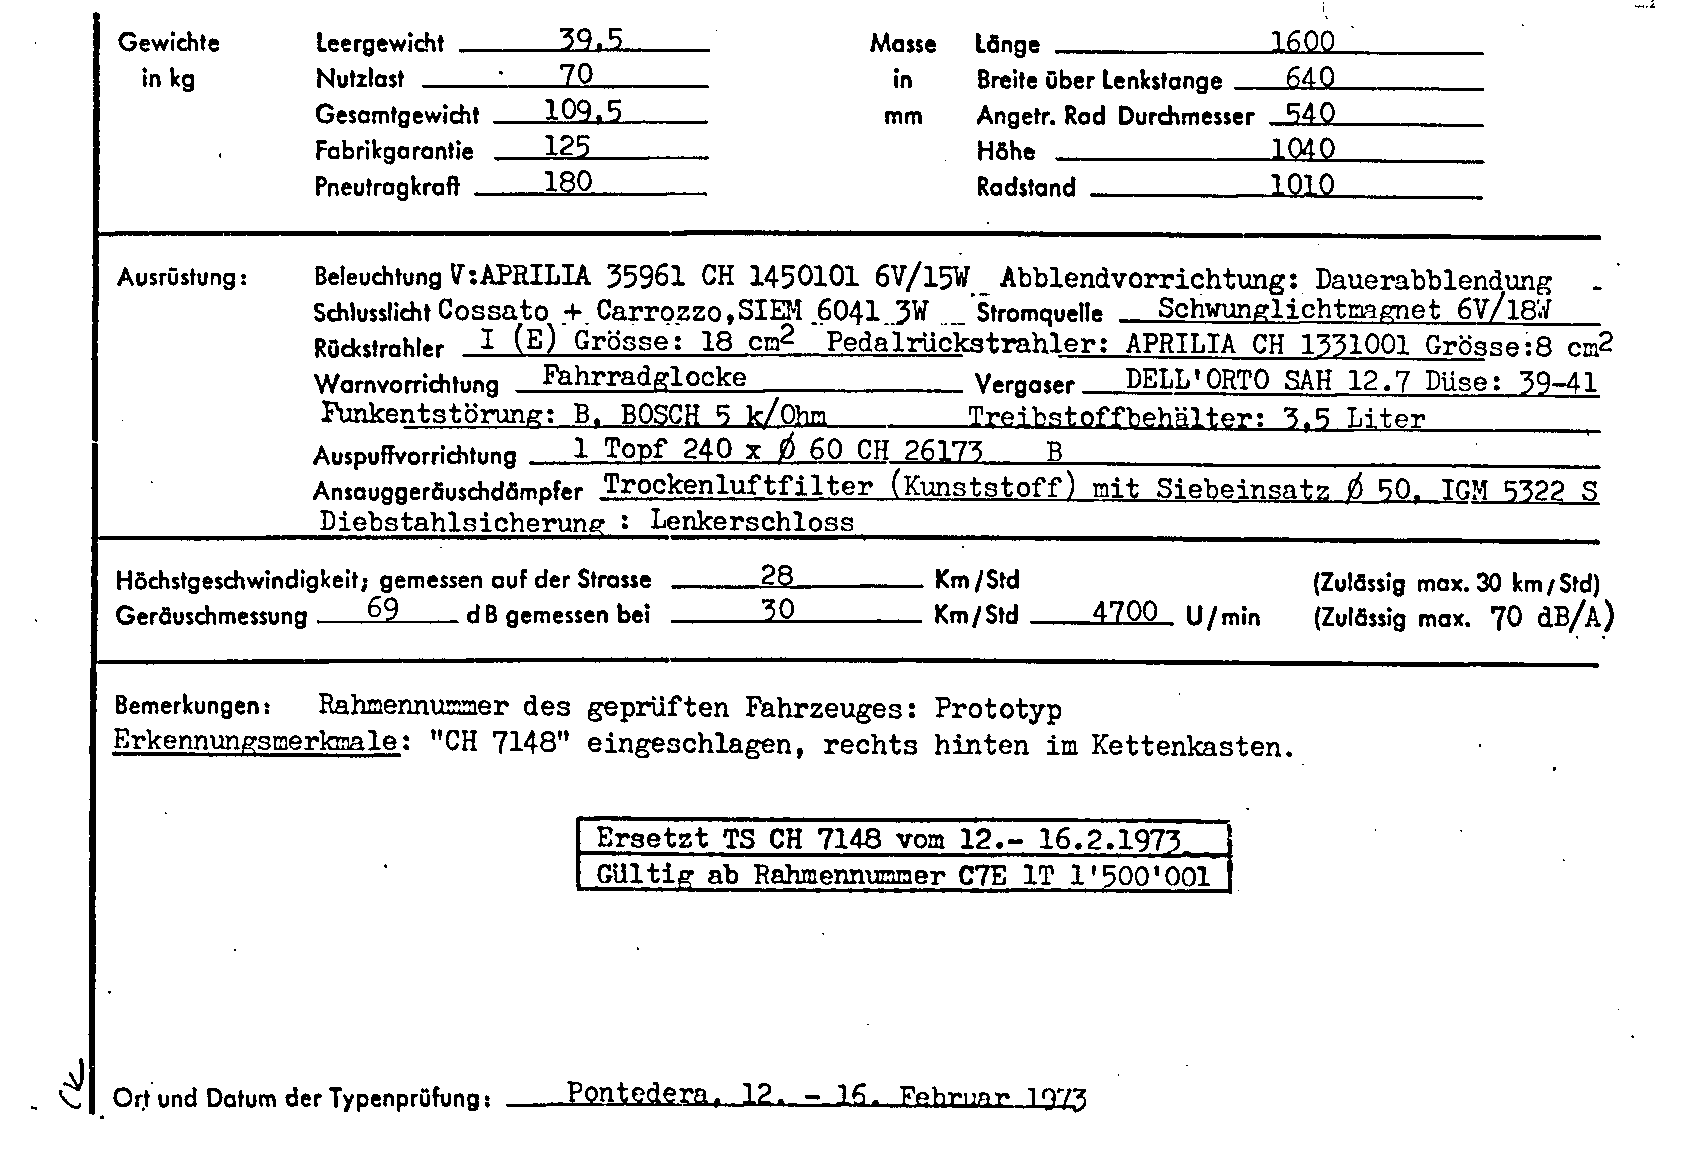 Schweizer Typenschein 7148 Deutsch Seite 2 (TG.DE.7148.2.png)